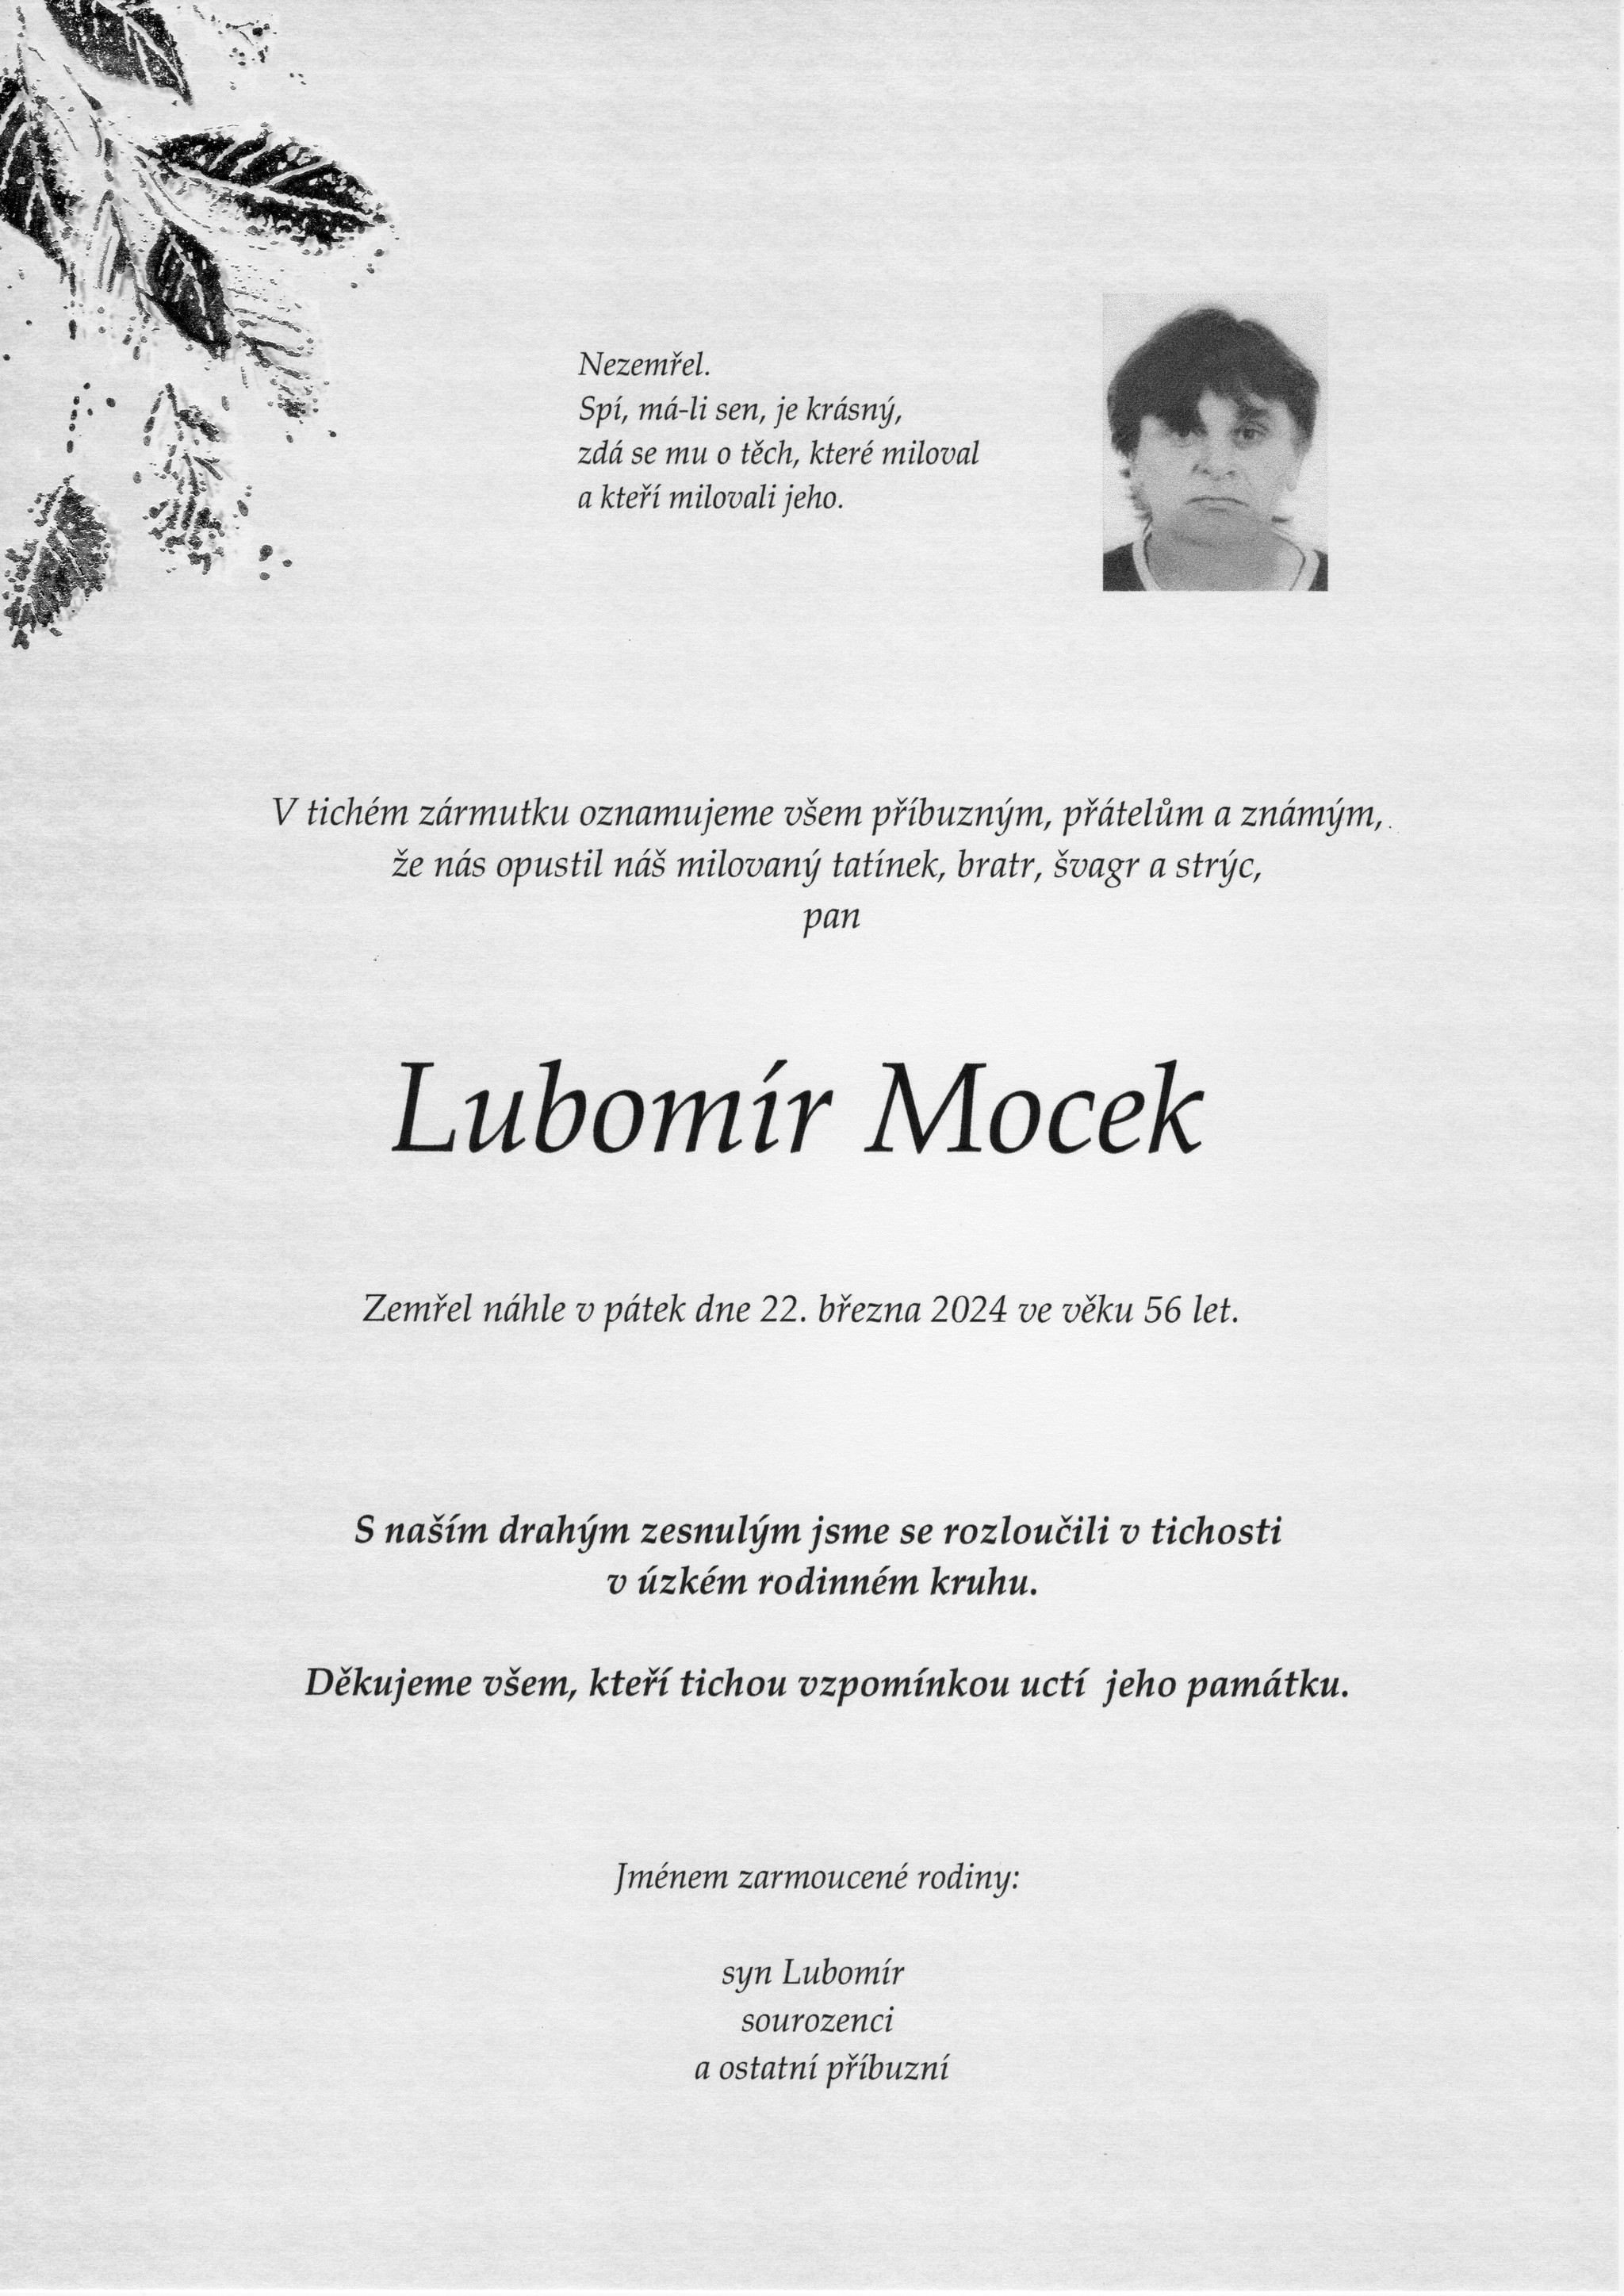 Lubomír Mocek